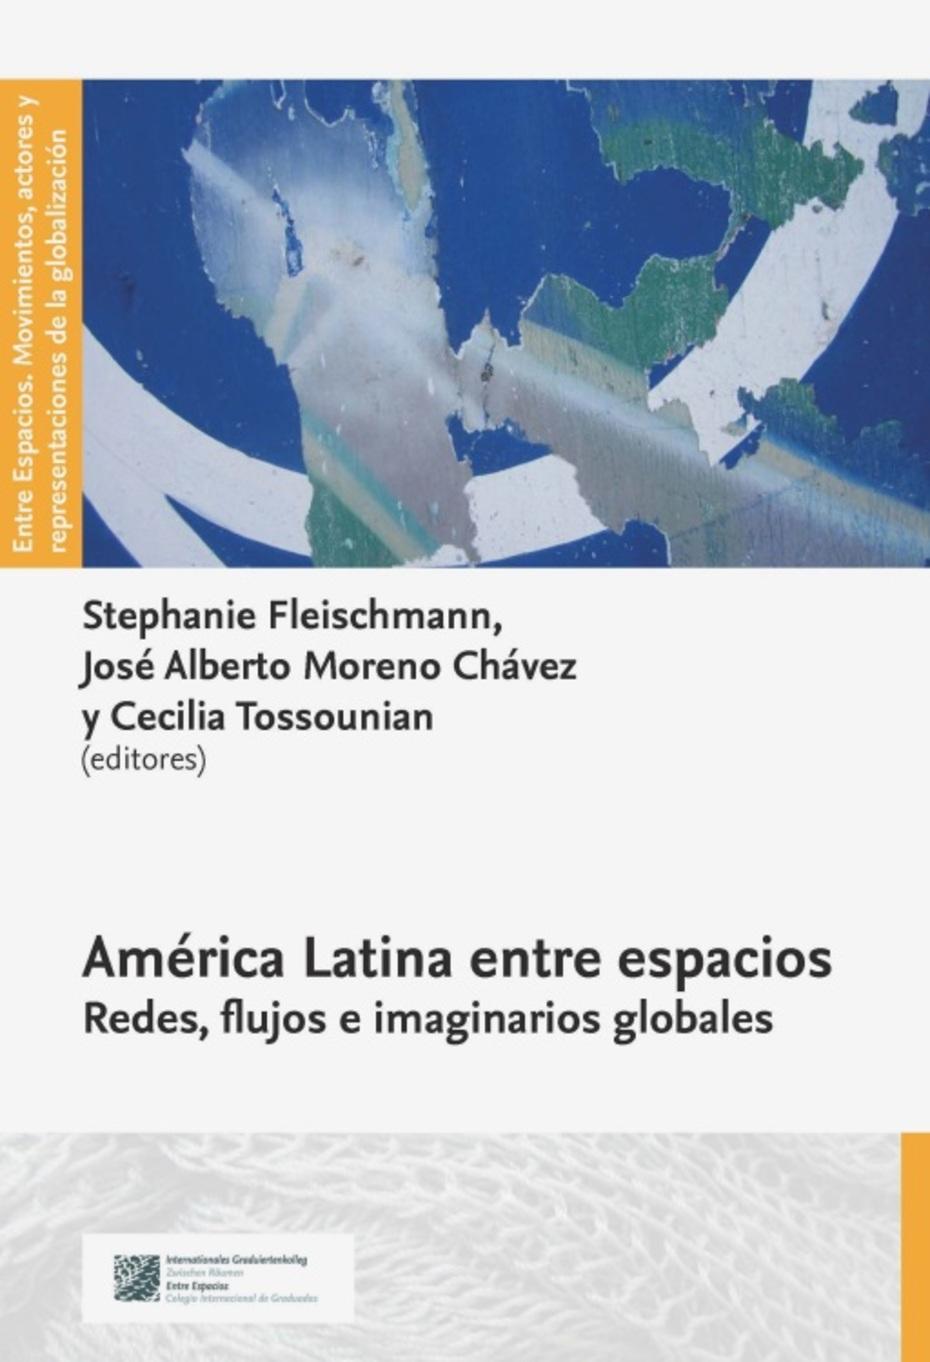 América Latina entre espacios. Redes, flujos e imaginarios globales